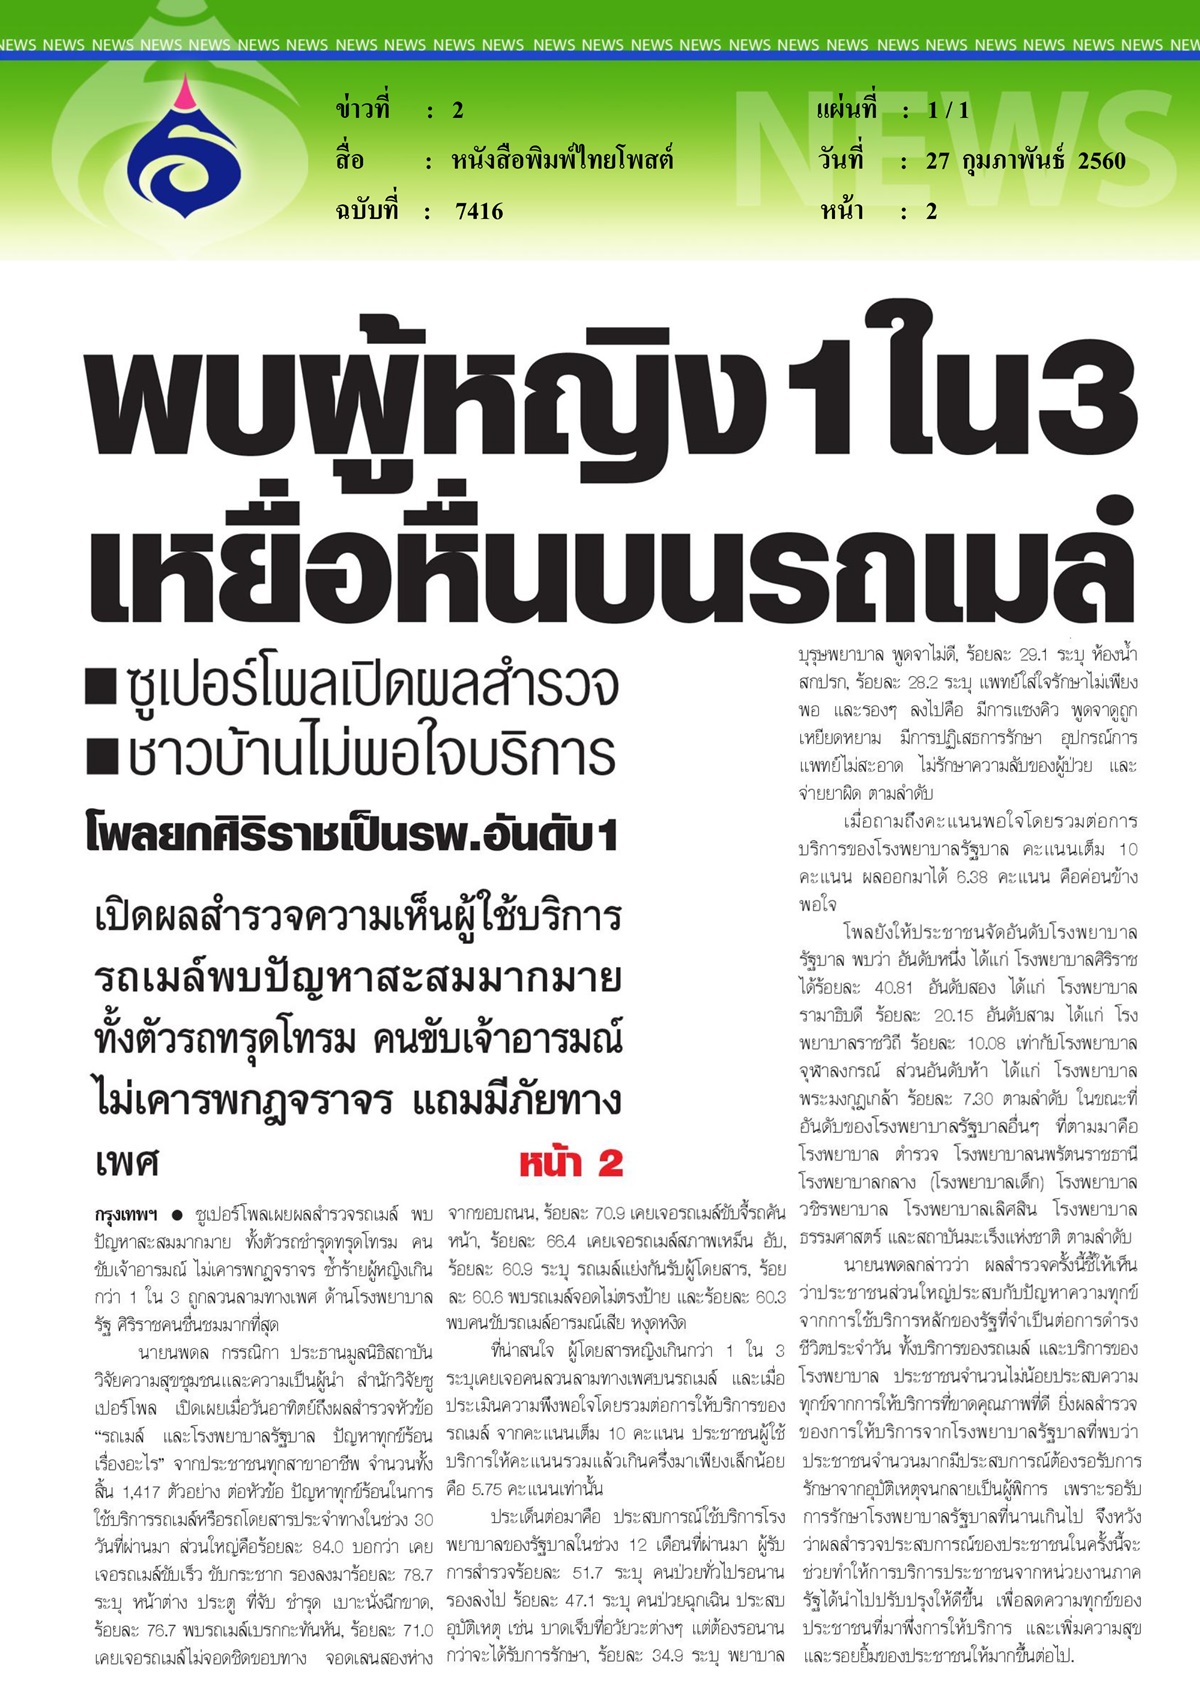 หนังสือพิมพ์ไทยโพสต์, พบผู้หญิง 1 ใน 3 เหยื่อหื่นบนรถเมล์ ซูเปอร์โพลเปิดผลสำรวจชาวบ้านไม่พอใจบริการ